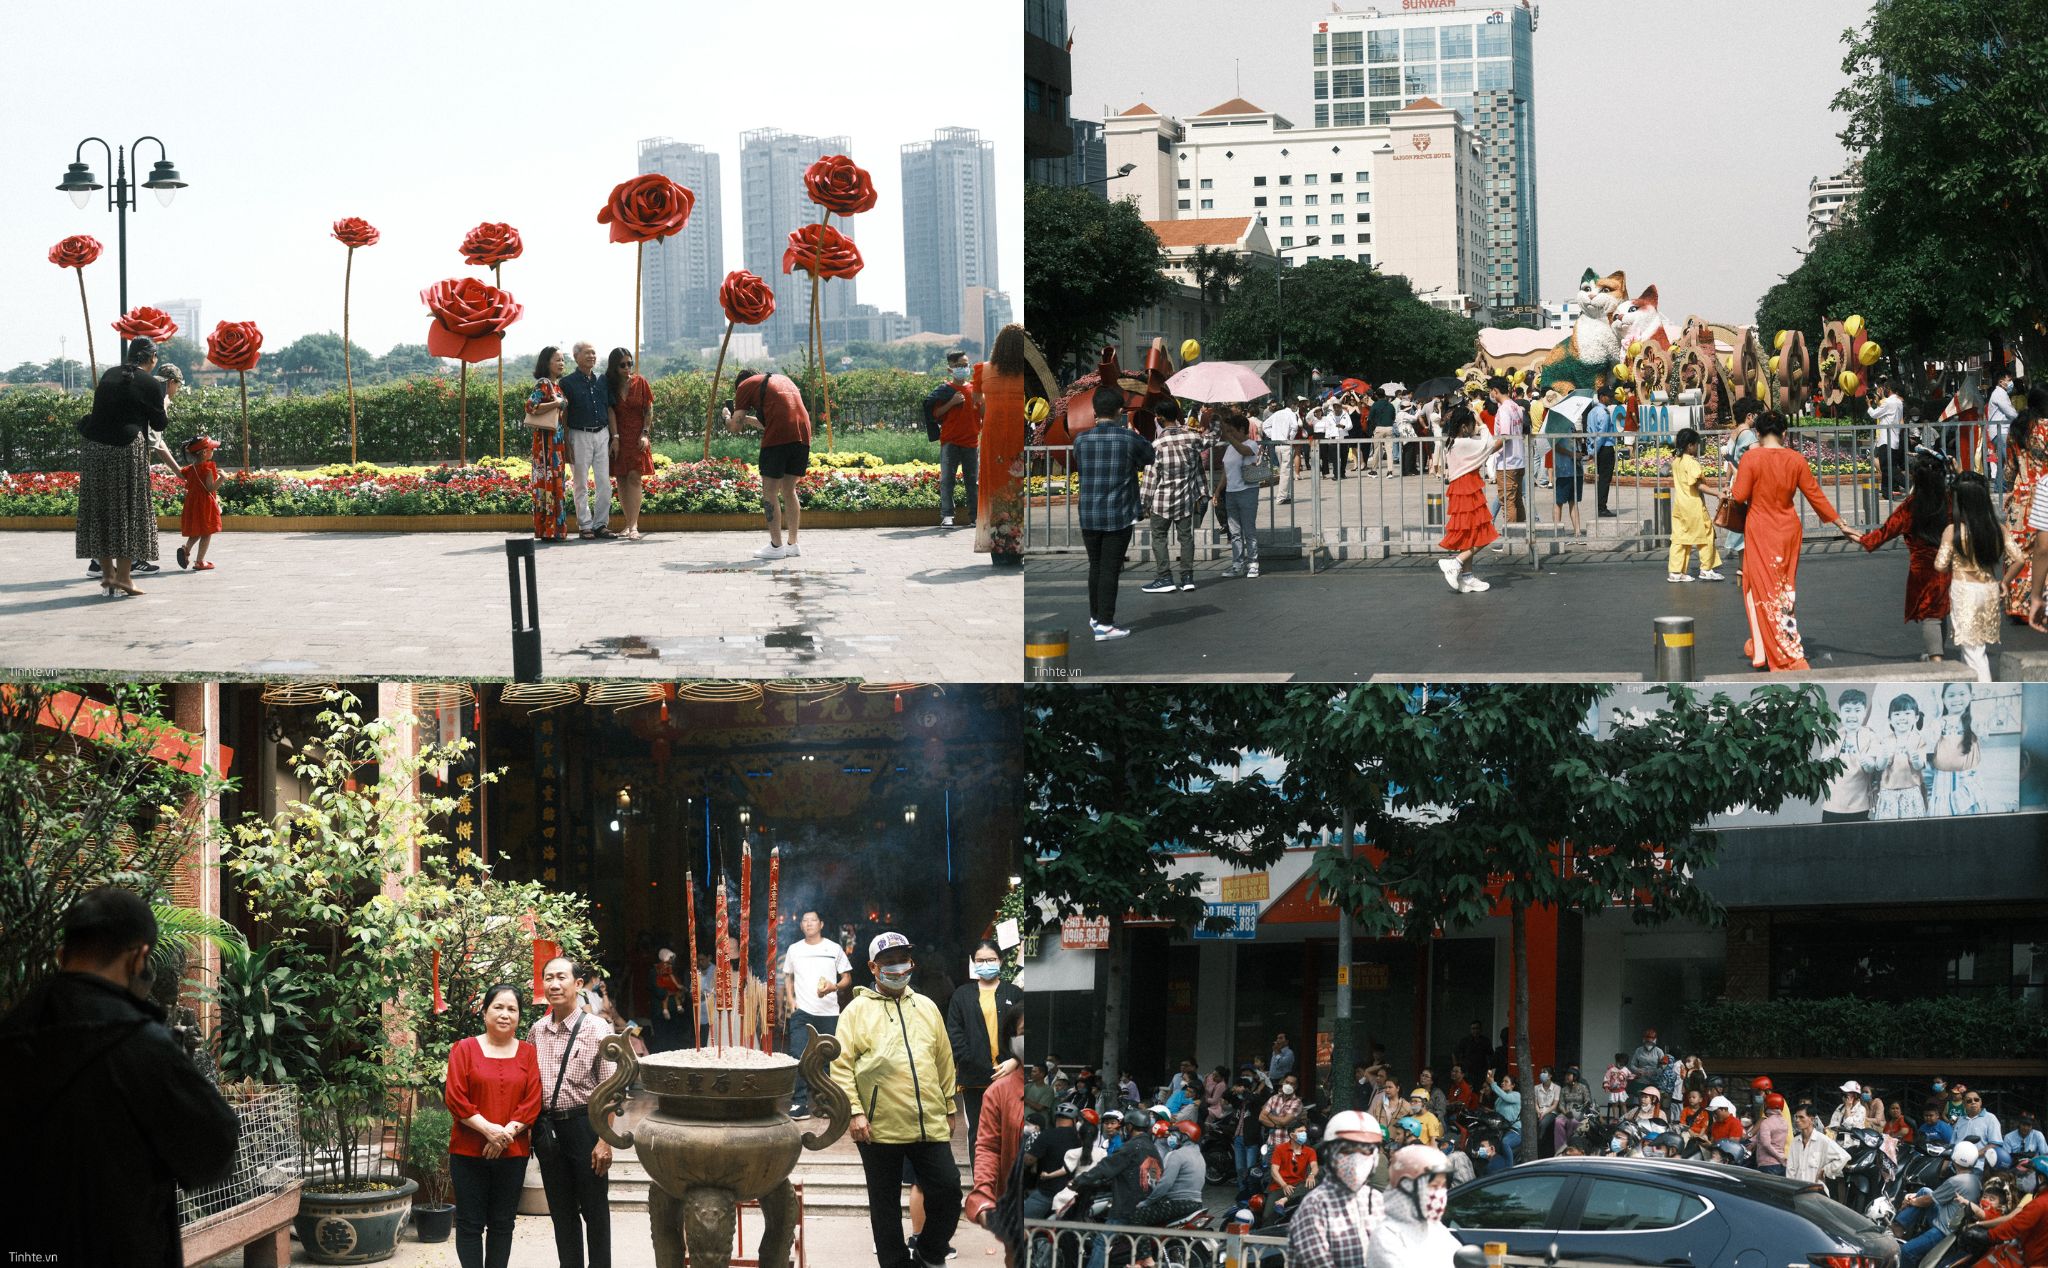 Hình ảnh Mùng 1 Tết ở Sài Gòn, tình hình Tết của anh em sao rồi?